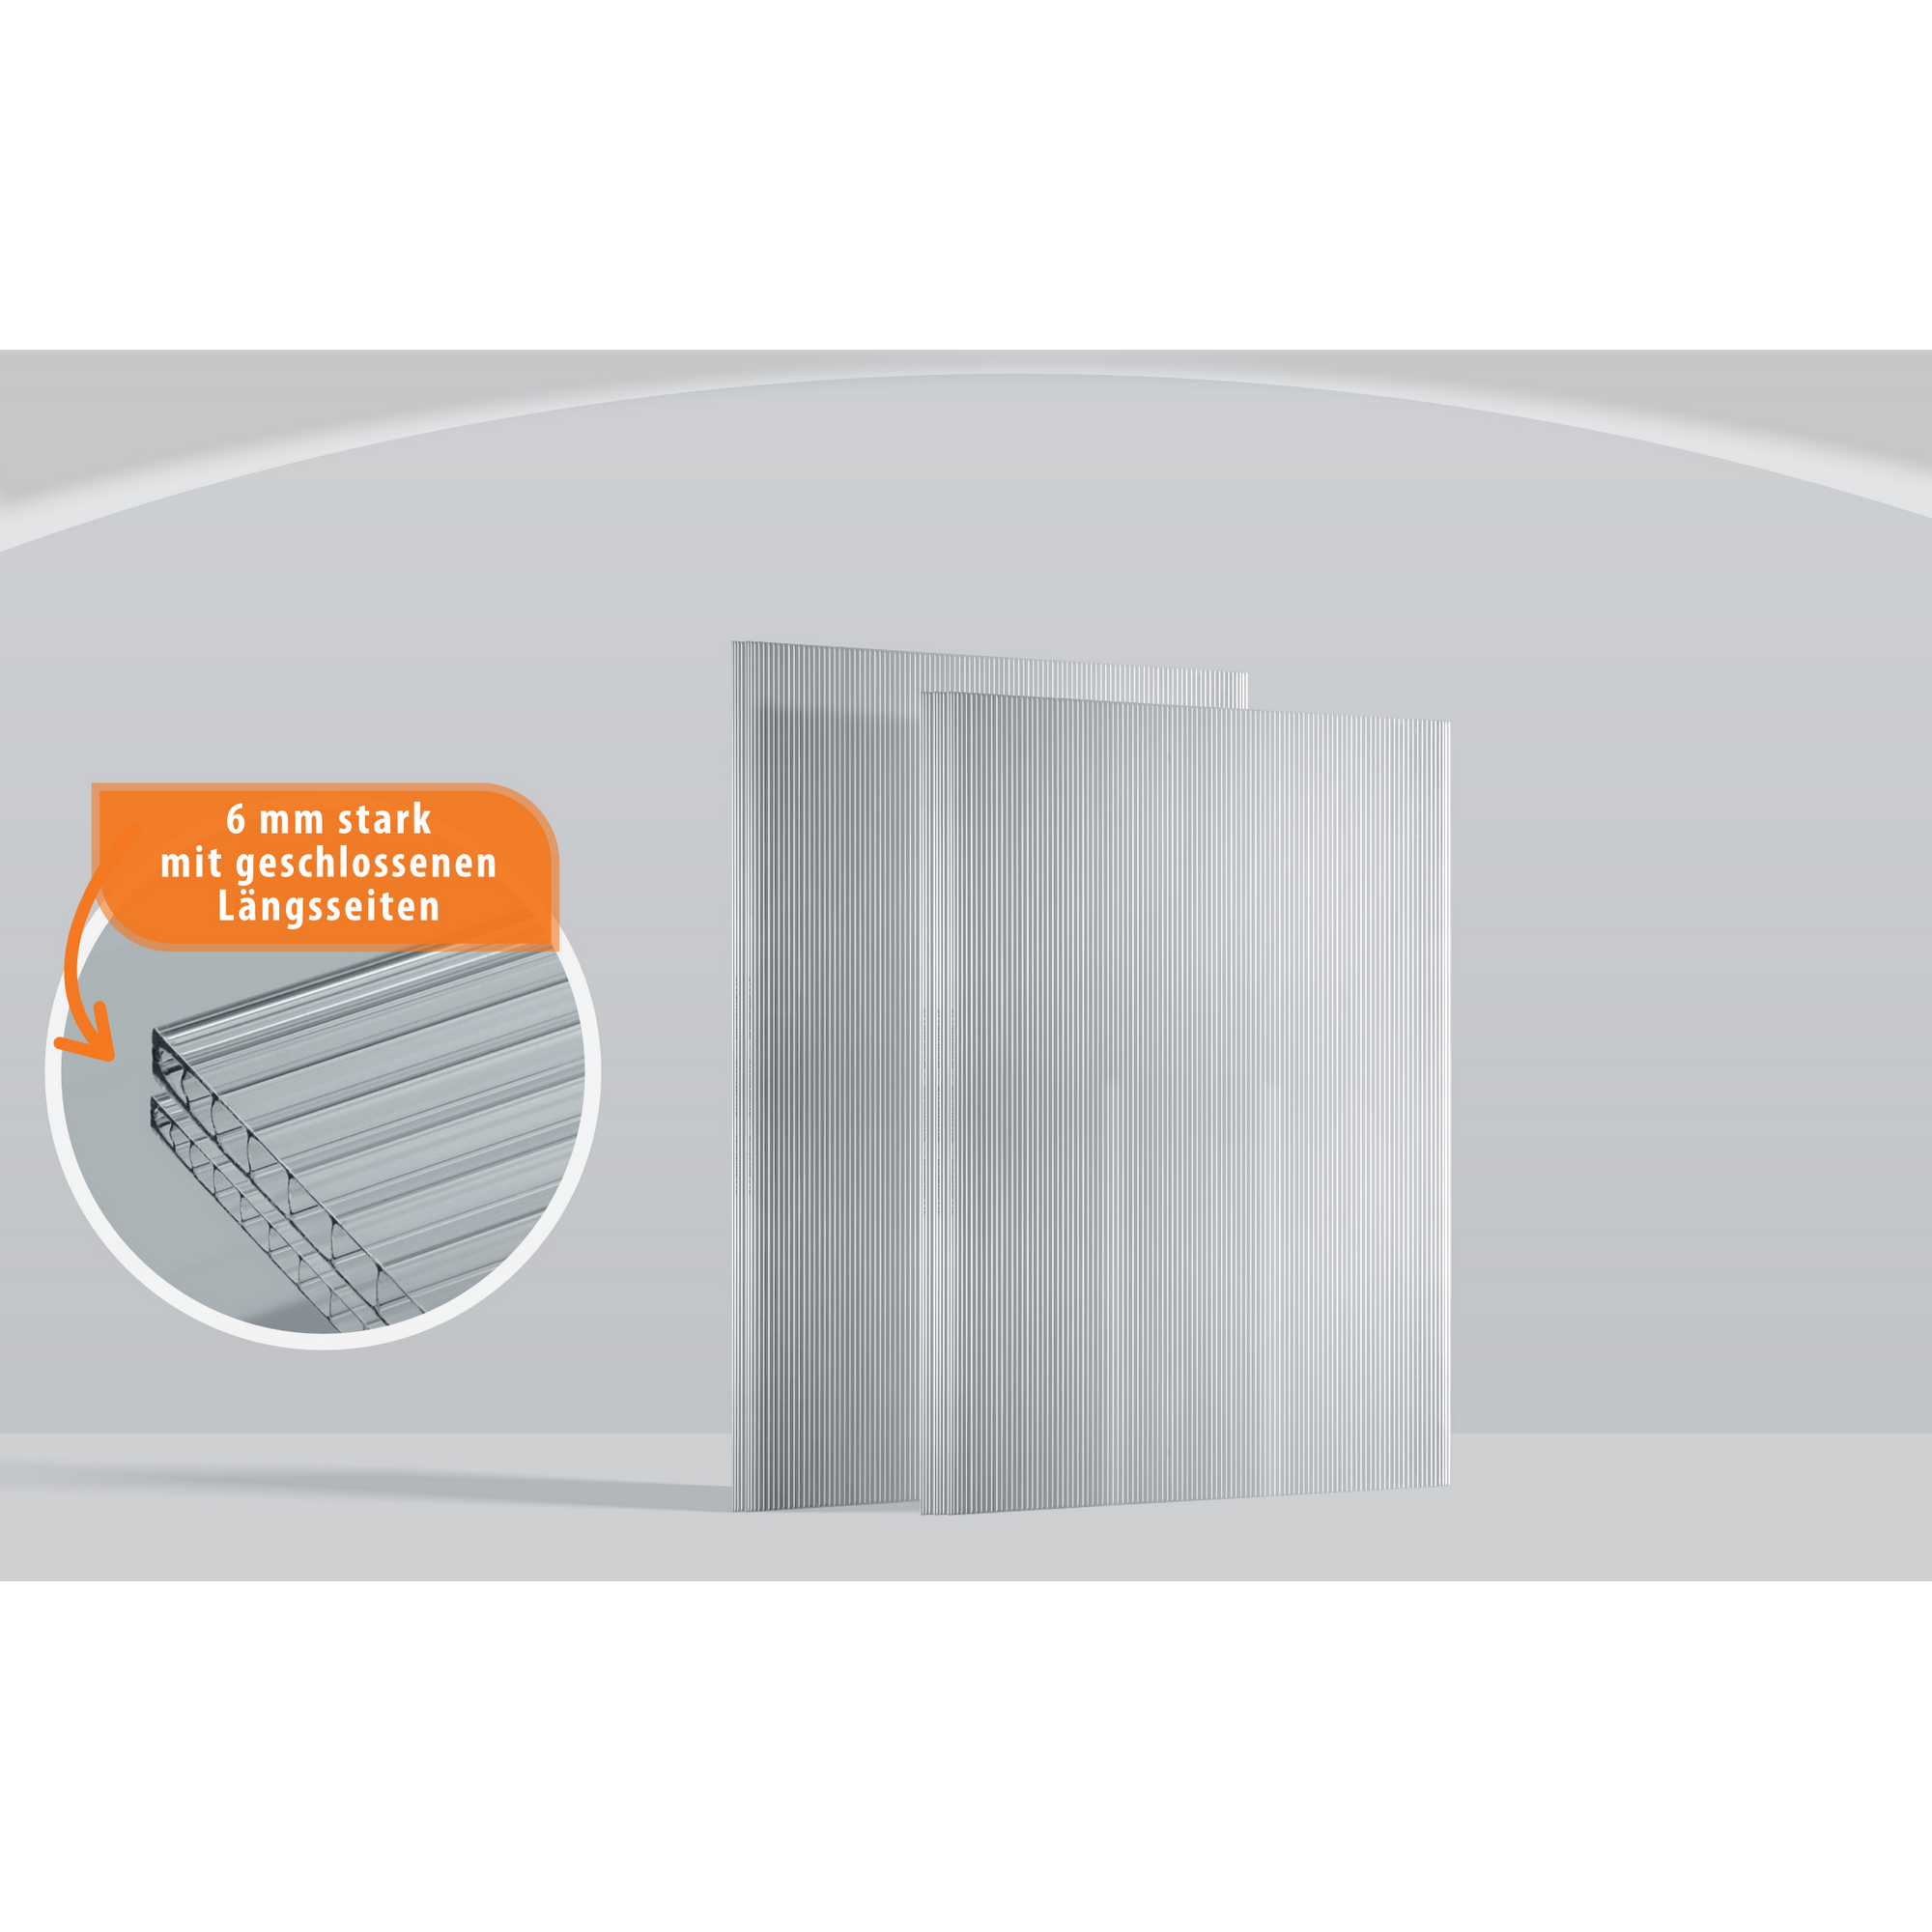 Hohlkammerplatten Gewächshaus 'Ergänzungsset 1' transparent 6 mm, 5-teilig + product picture